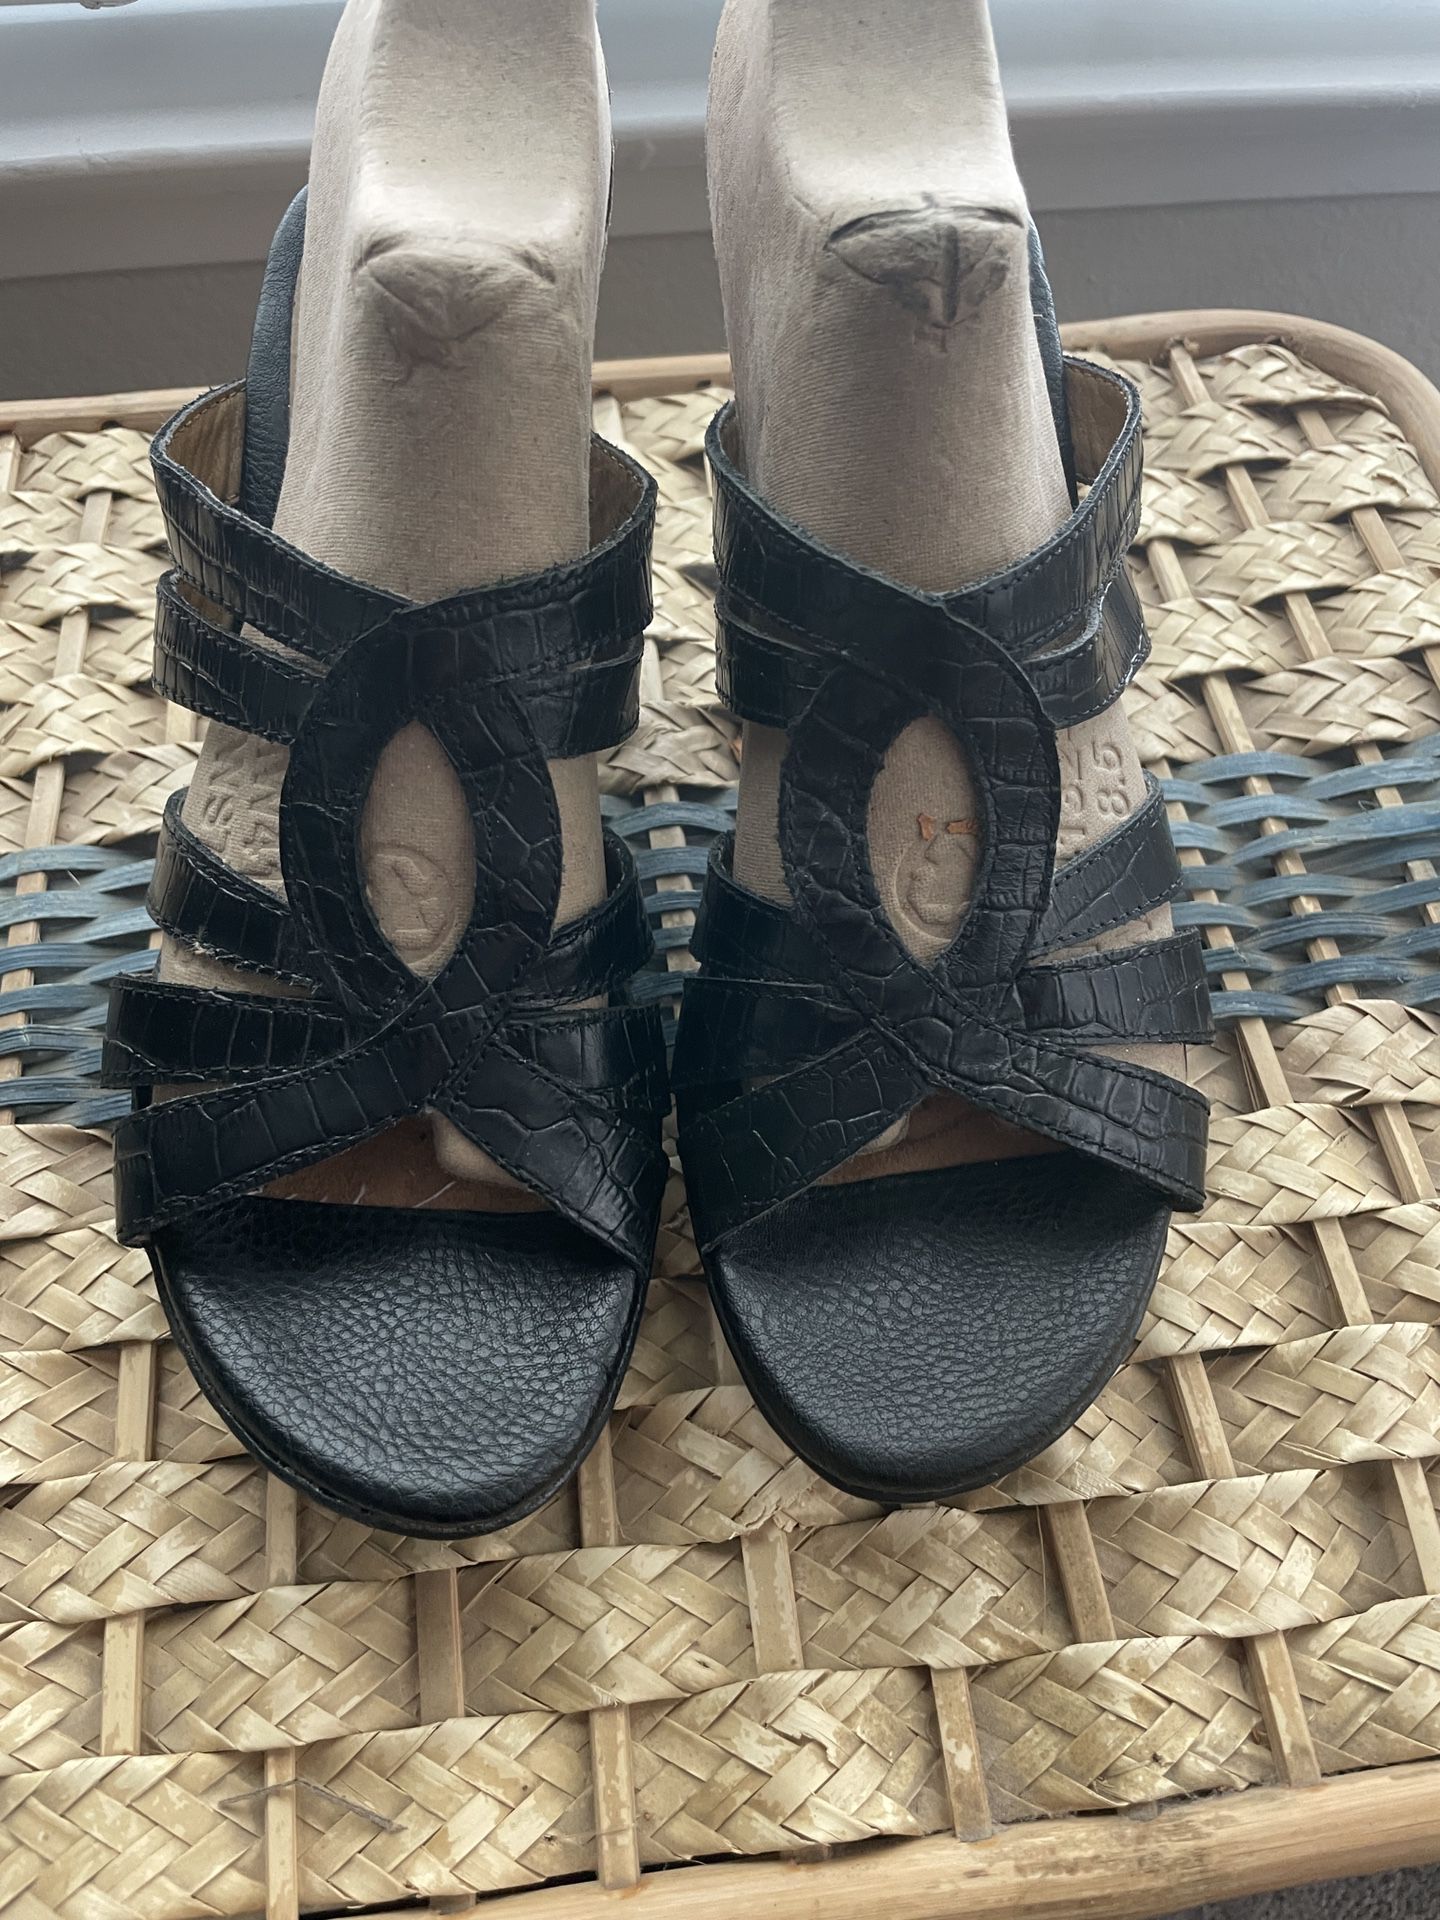 I Love Comfort Black Wedge Heels Size 7.5